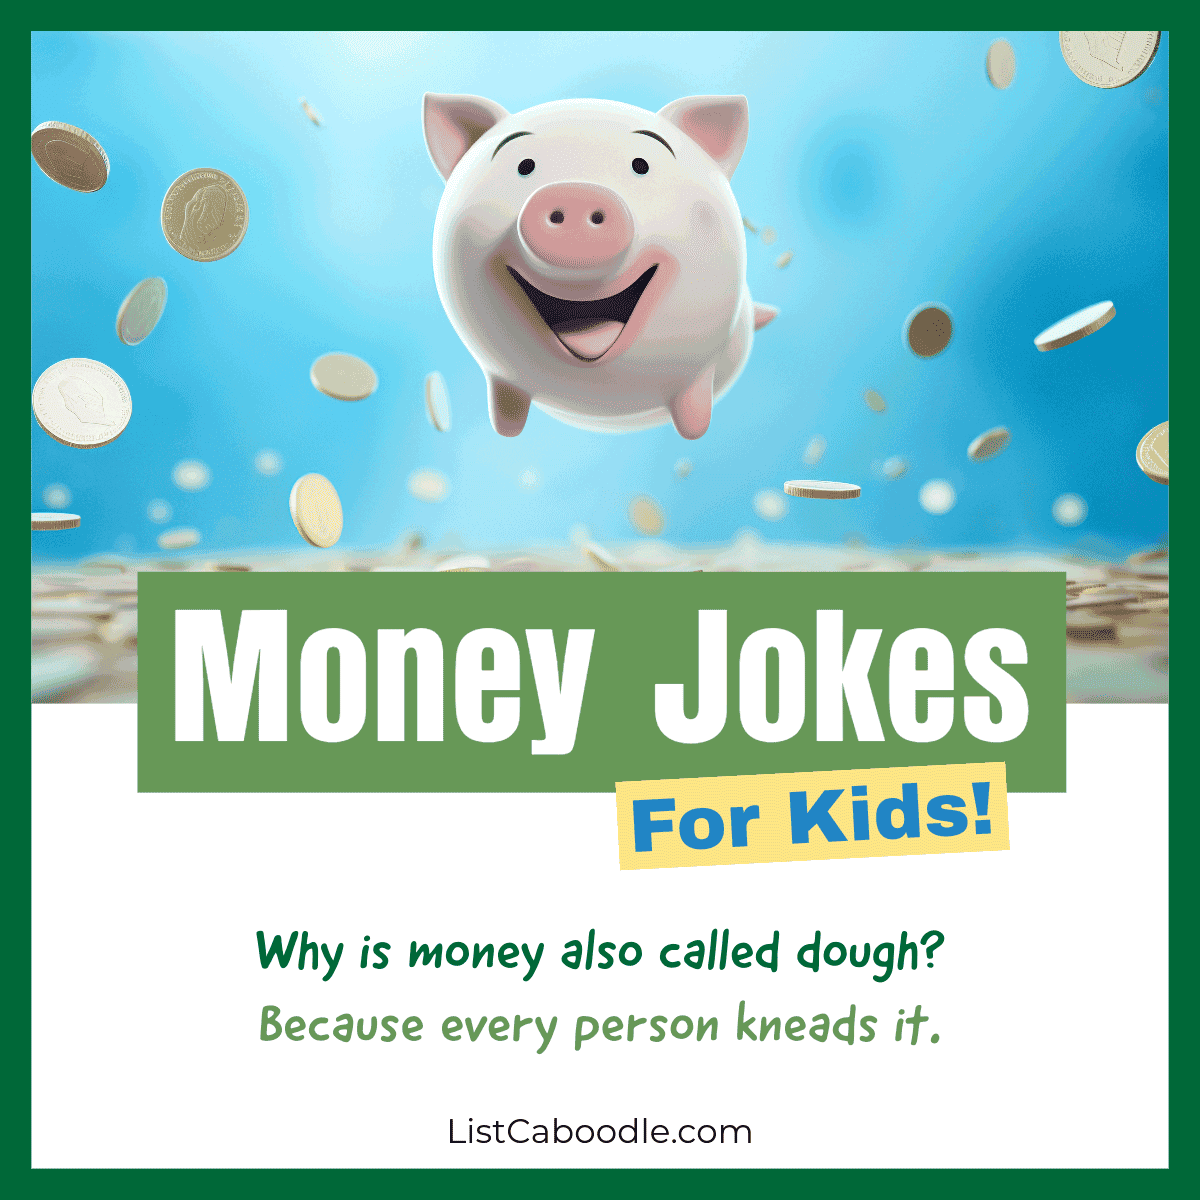 Money jokes for kids